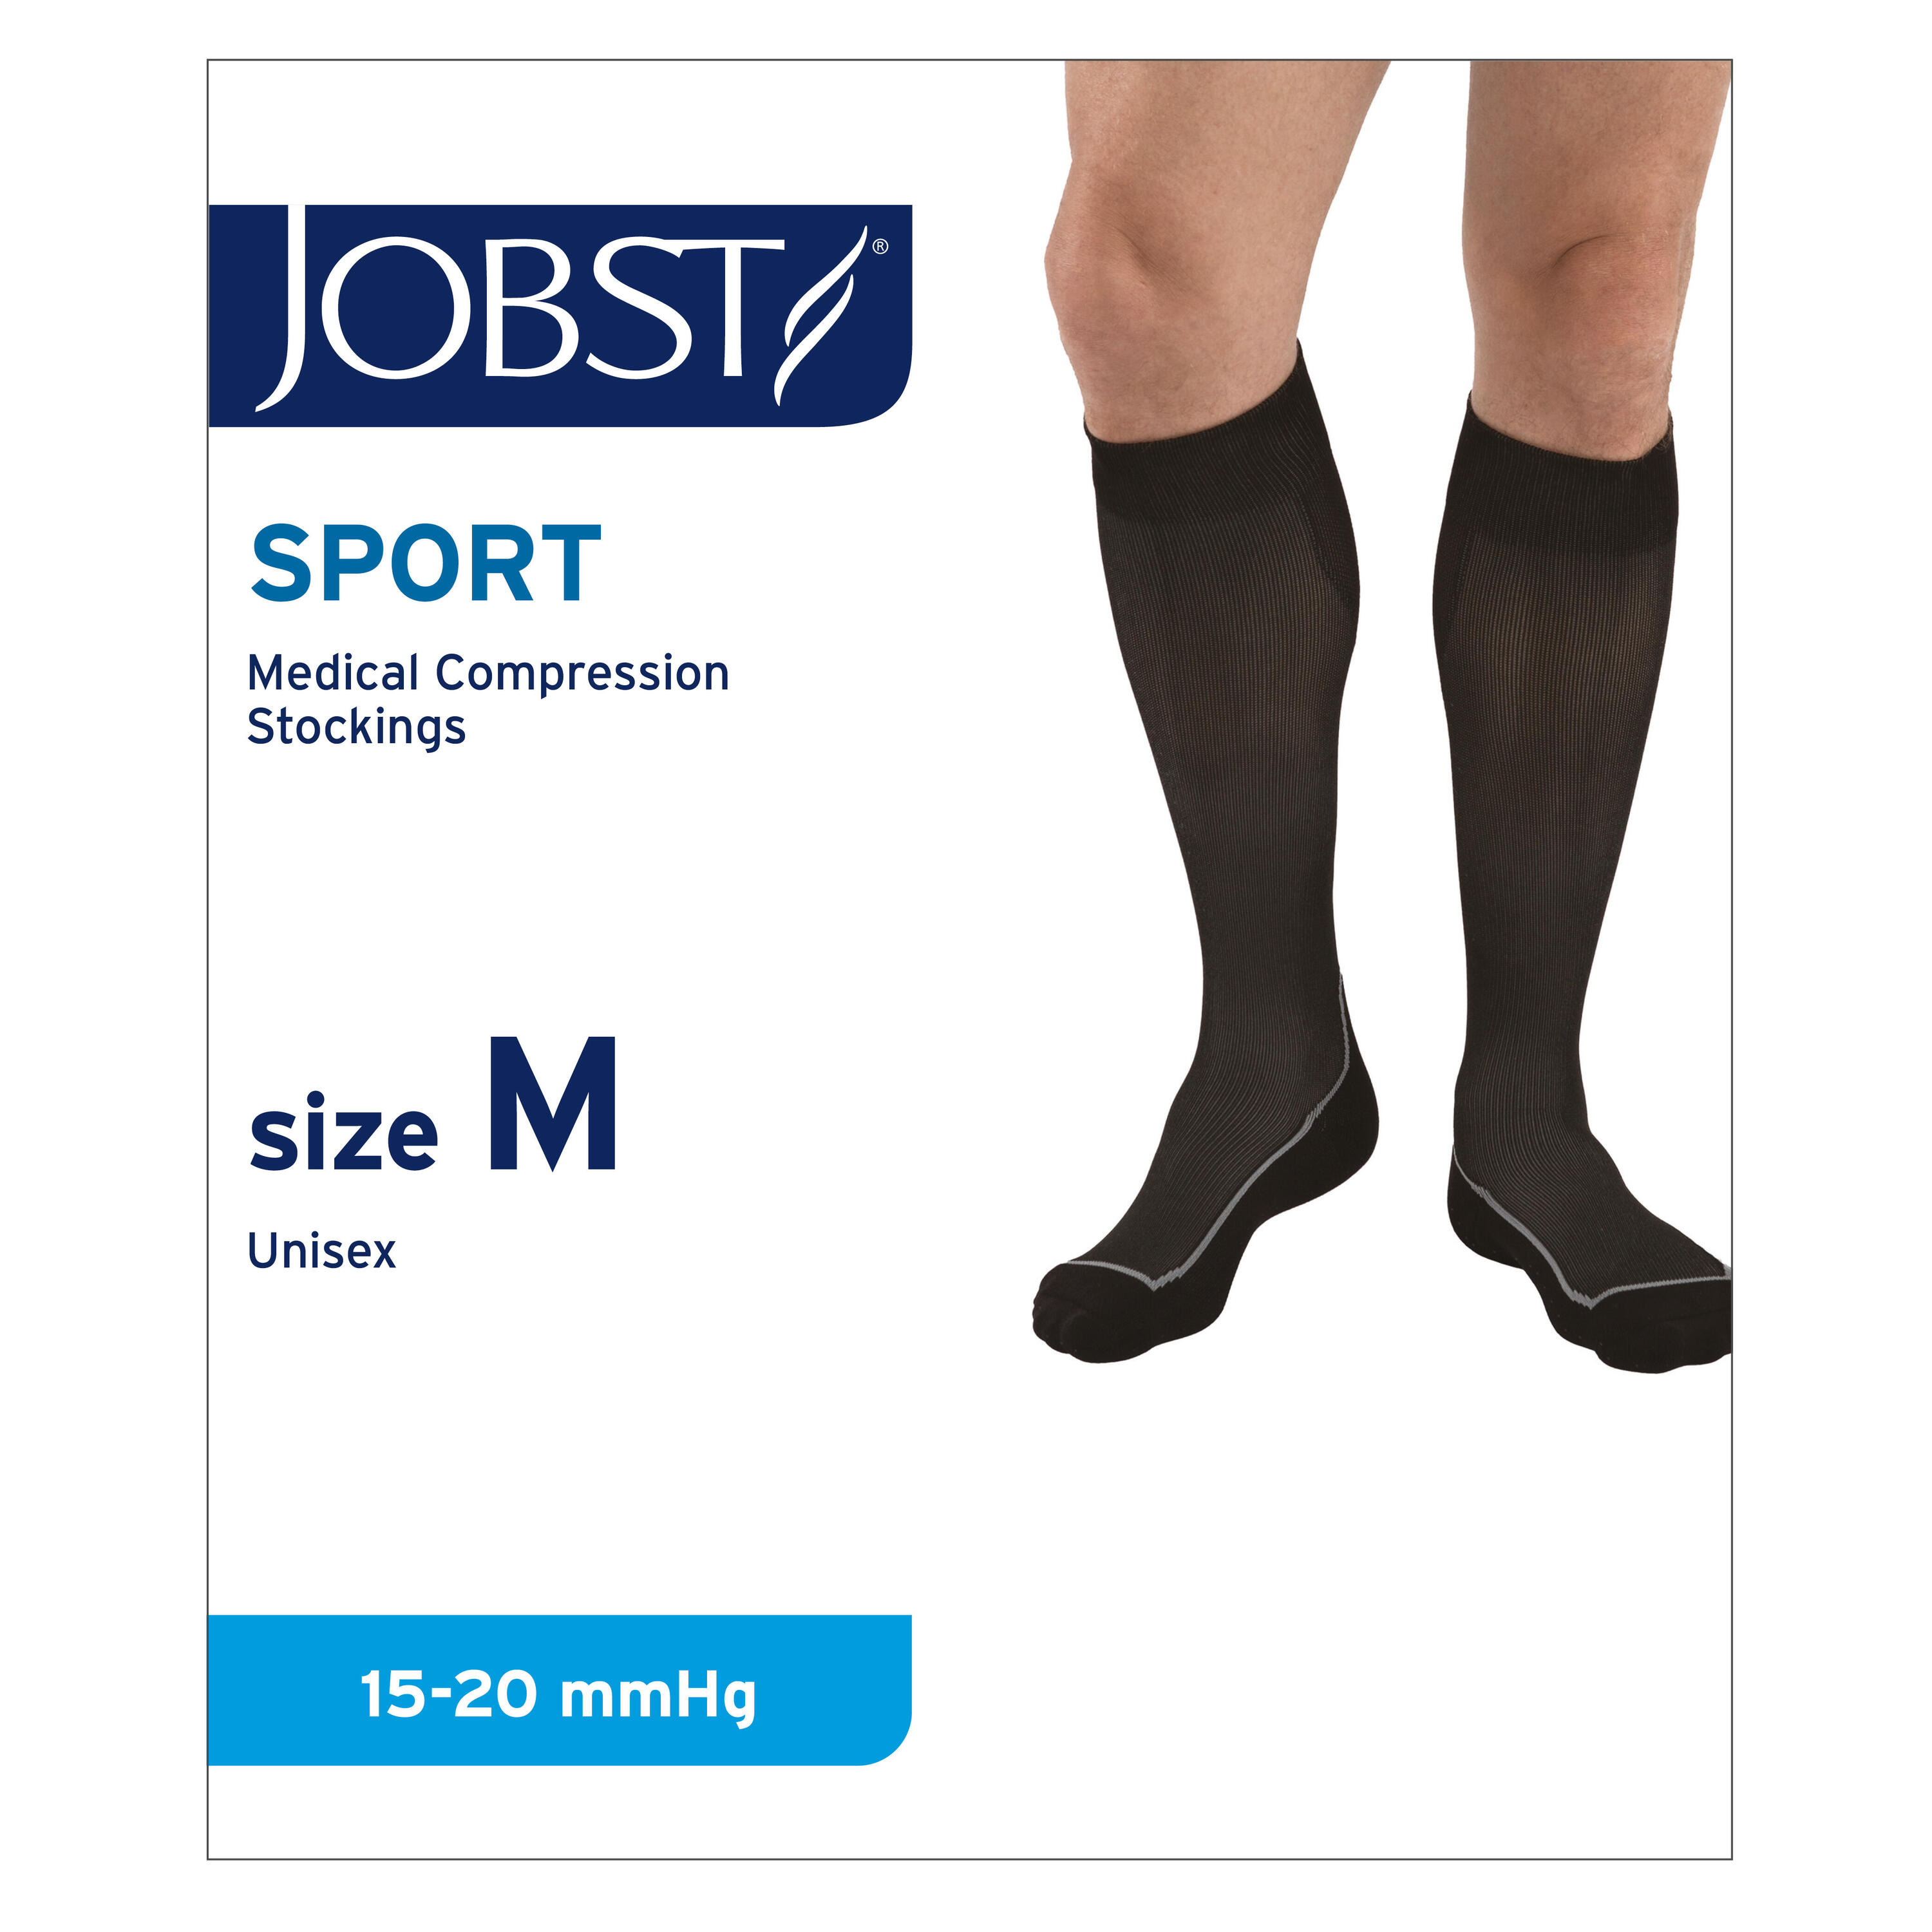 JOBST Unisex Knee High Compression Socks - Medium